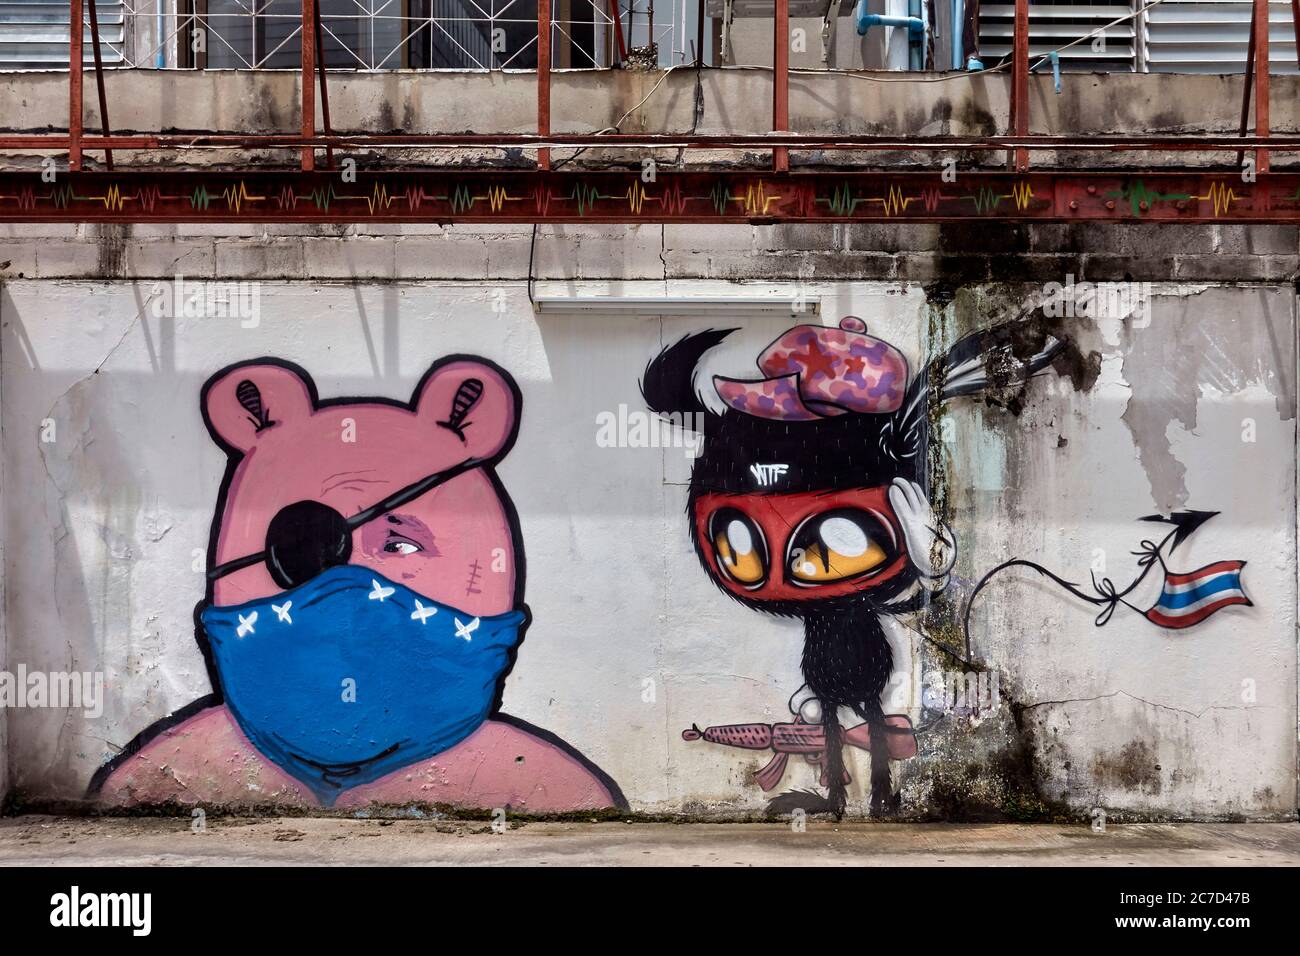 Masque visage Covid 19, ancienne décoration murale à peeling mise à jour à l'image Graffiti amusante avec ours Teddy portant le masque facial coronavirus et un ami perplexe. Banque D'Images